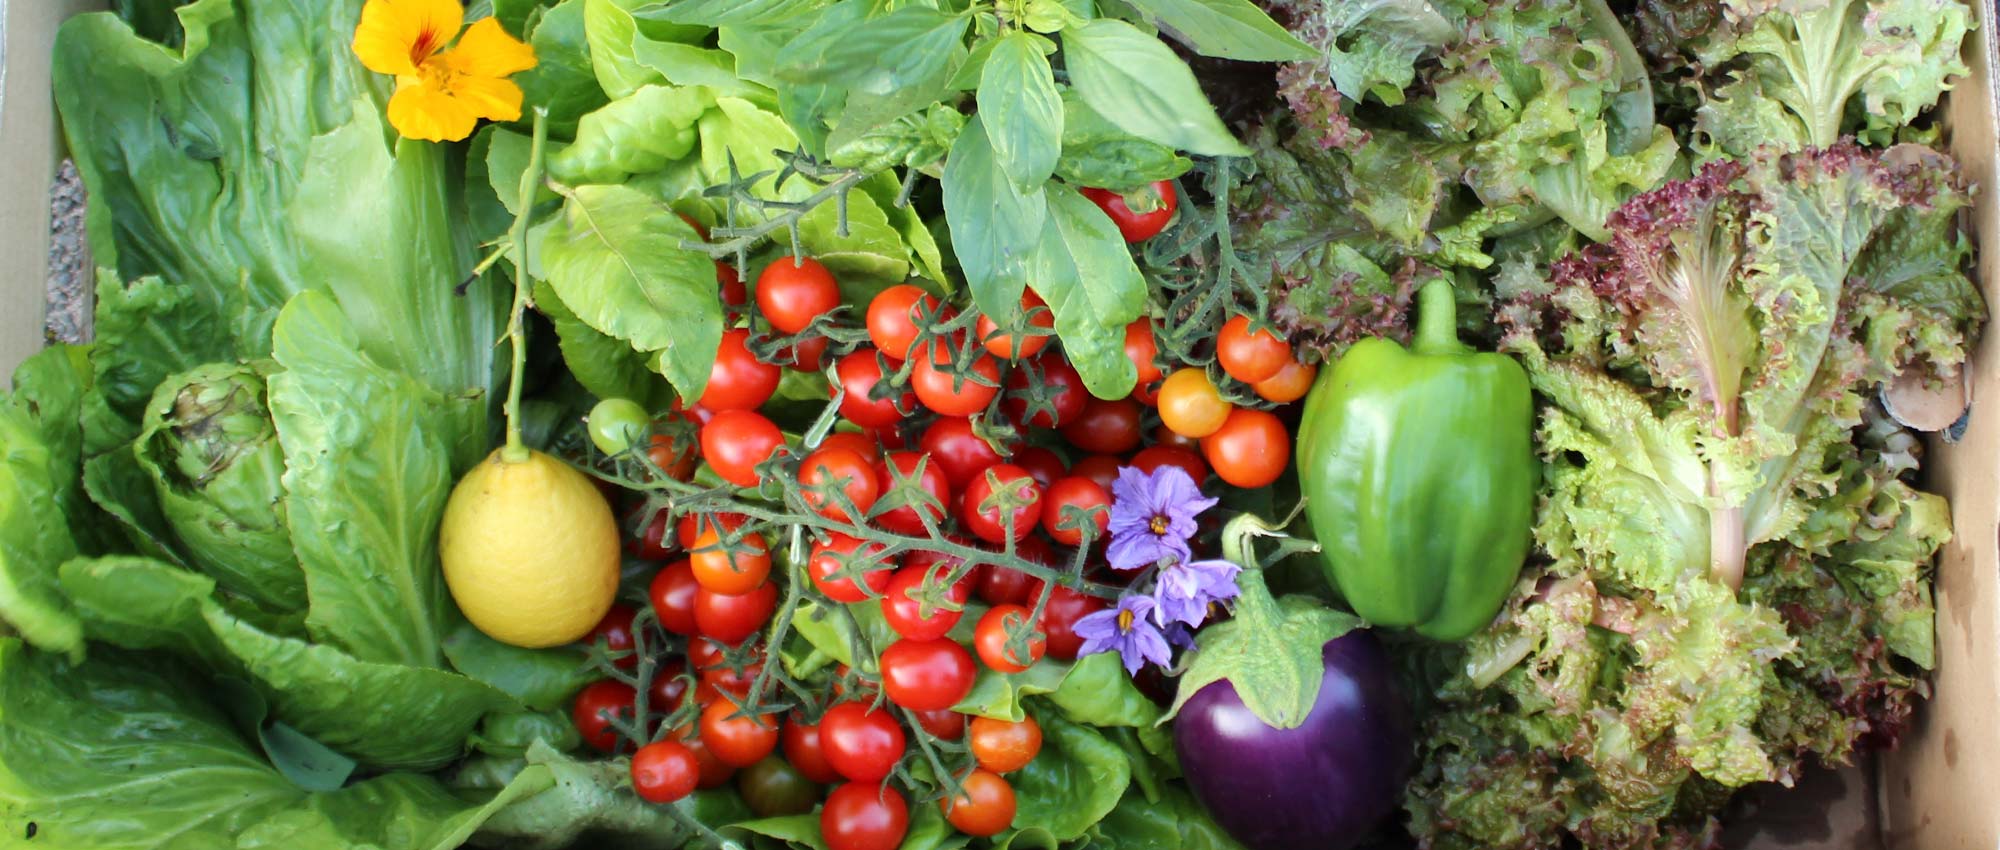 Eine bunte Gemüseauswahl aus Tomaten, Paprika, Aubergine und Salat, zu finden im Naschgarten vom Genusshotel SCHWARZWALD PANORAMA.